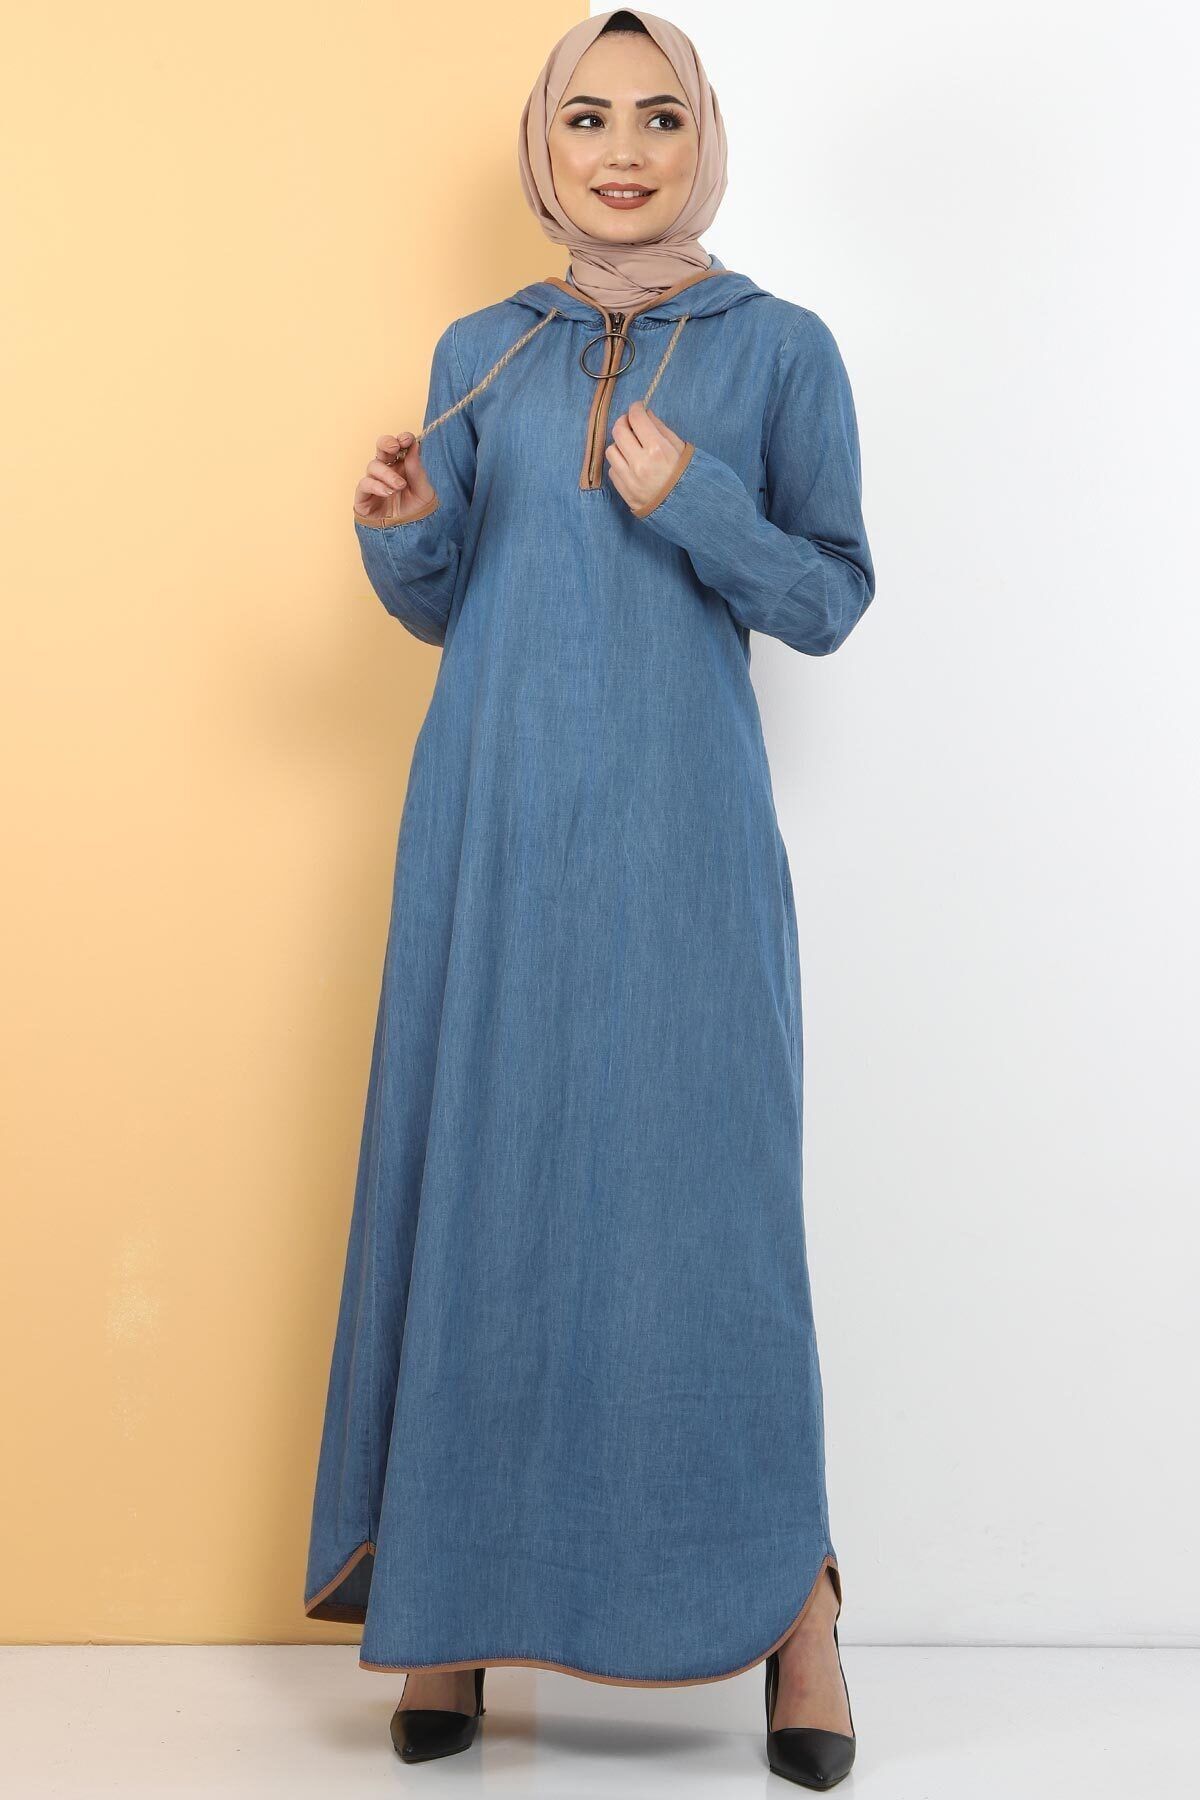 Tesettür Dünyası Kapşon Detaylı Kot Elbise Tsd10528 Açık Mavi